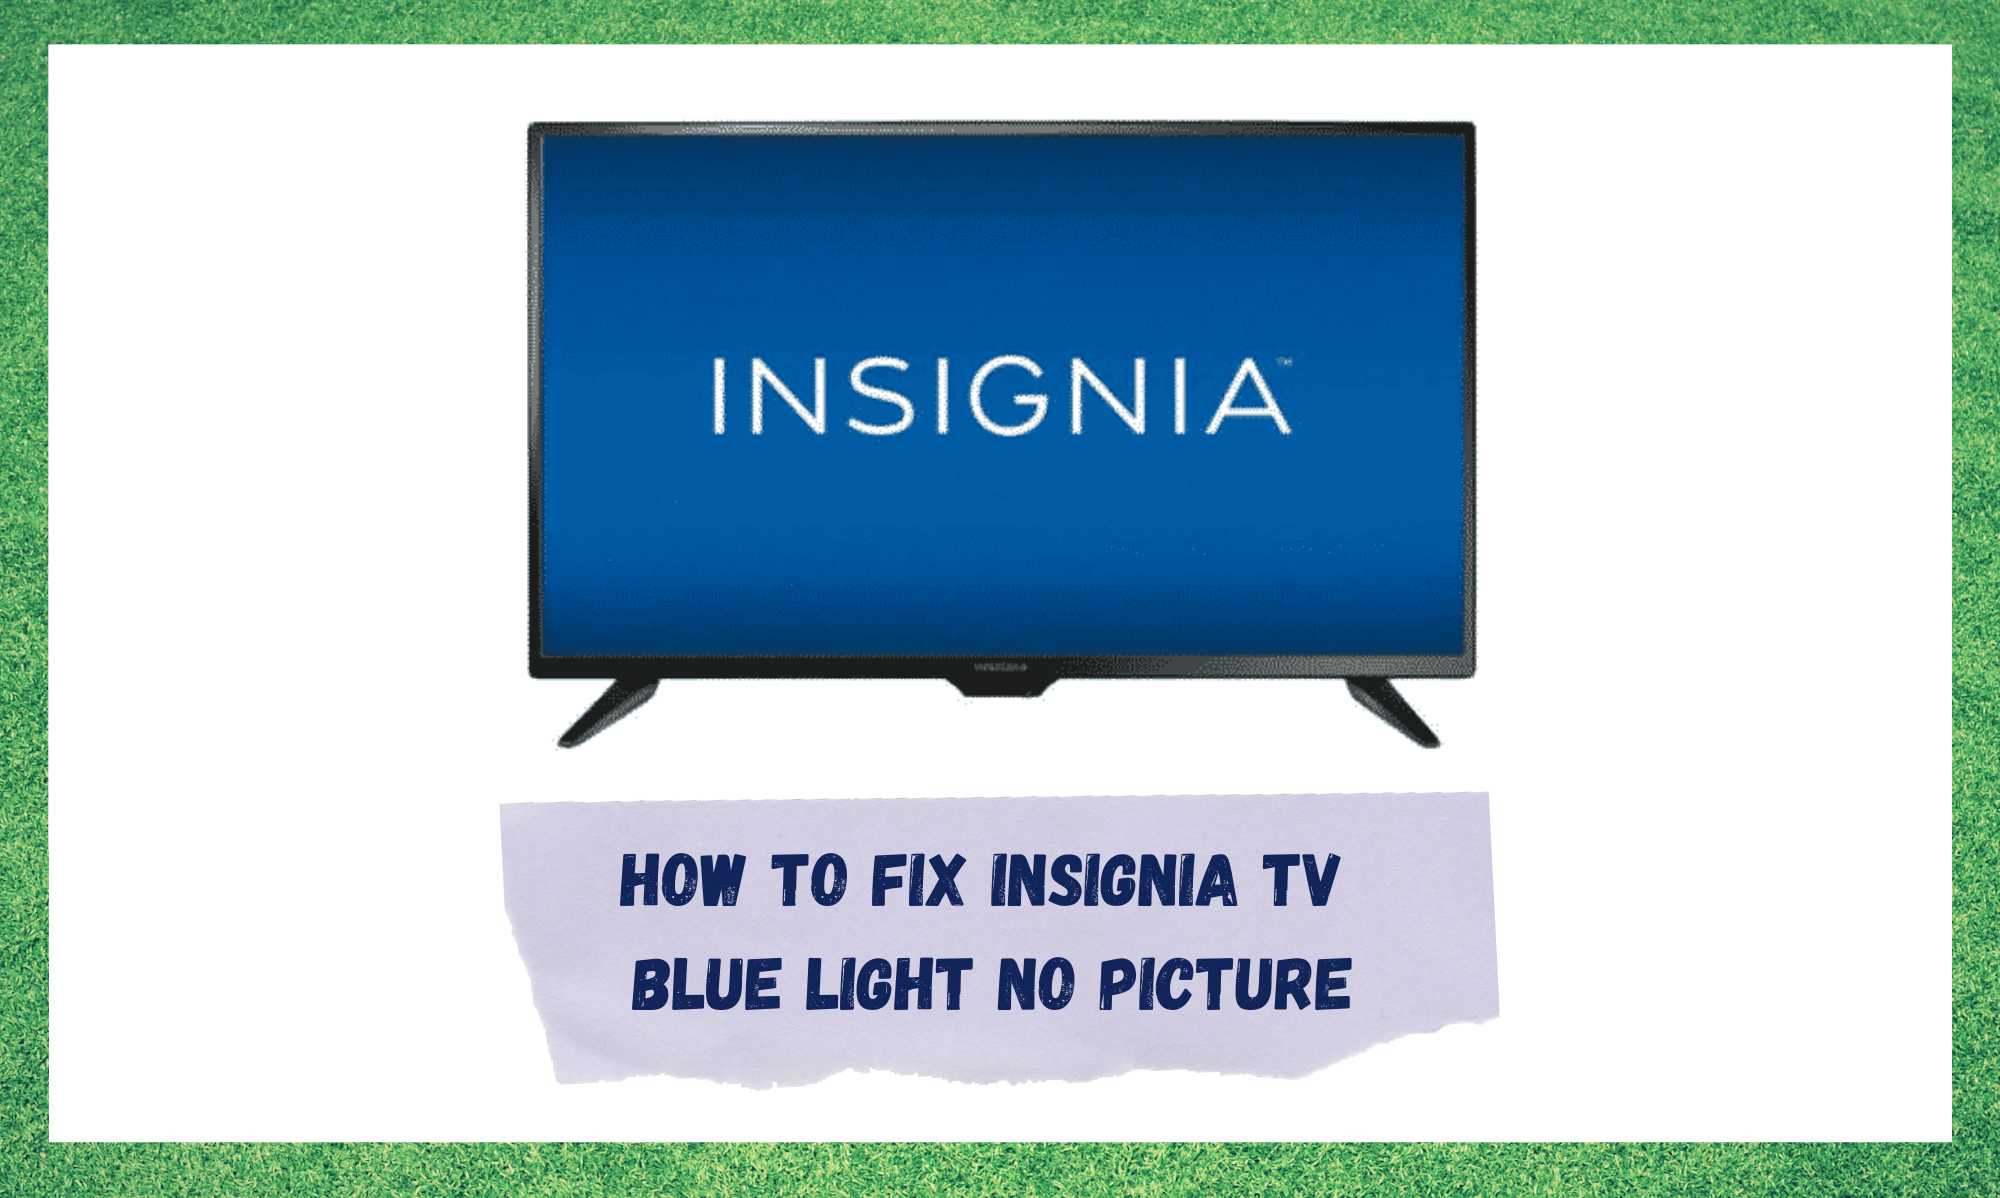 Insignia TV kék fény nincs kép: 3 módja a javításnak